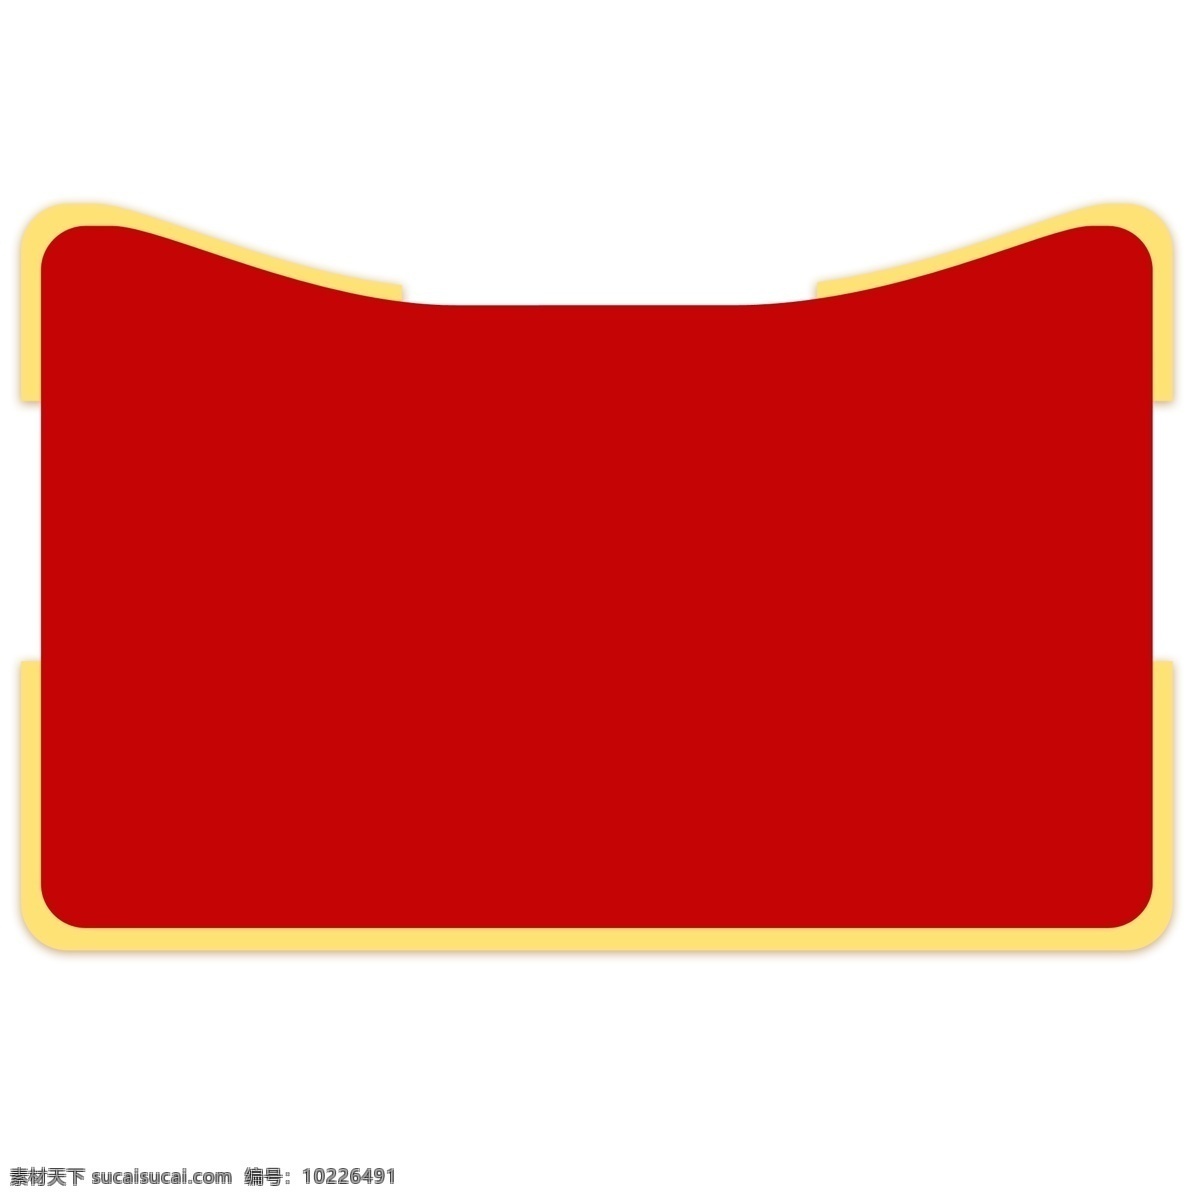 红色 猫 头 边框 金边 猫头框 设计素材 纹理边框